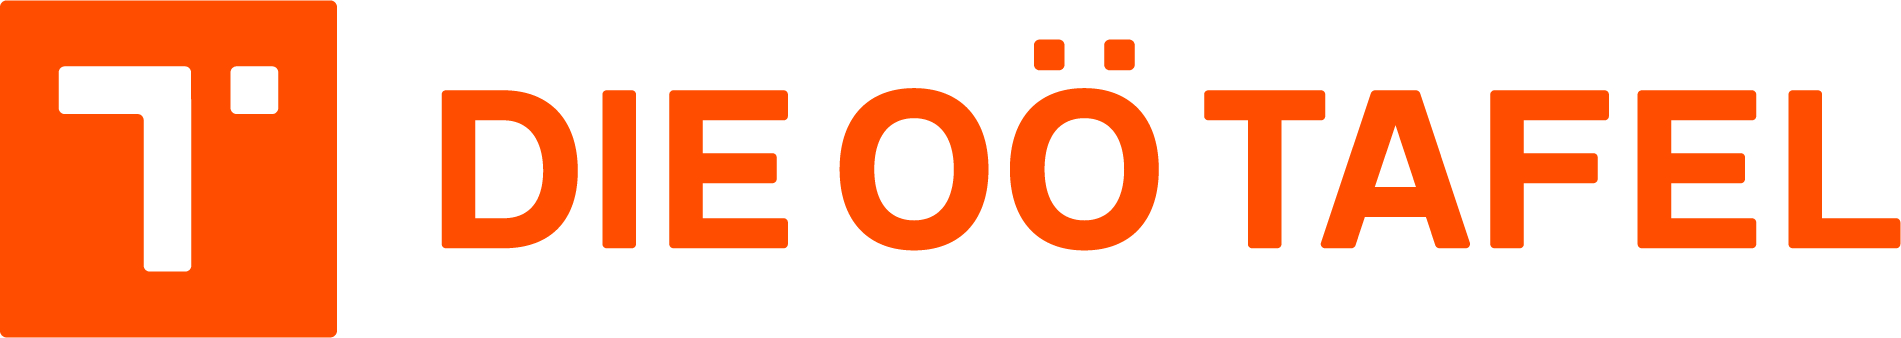 ooe-tafel_logo_4c_standard